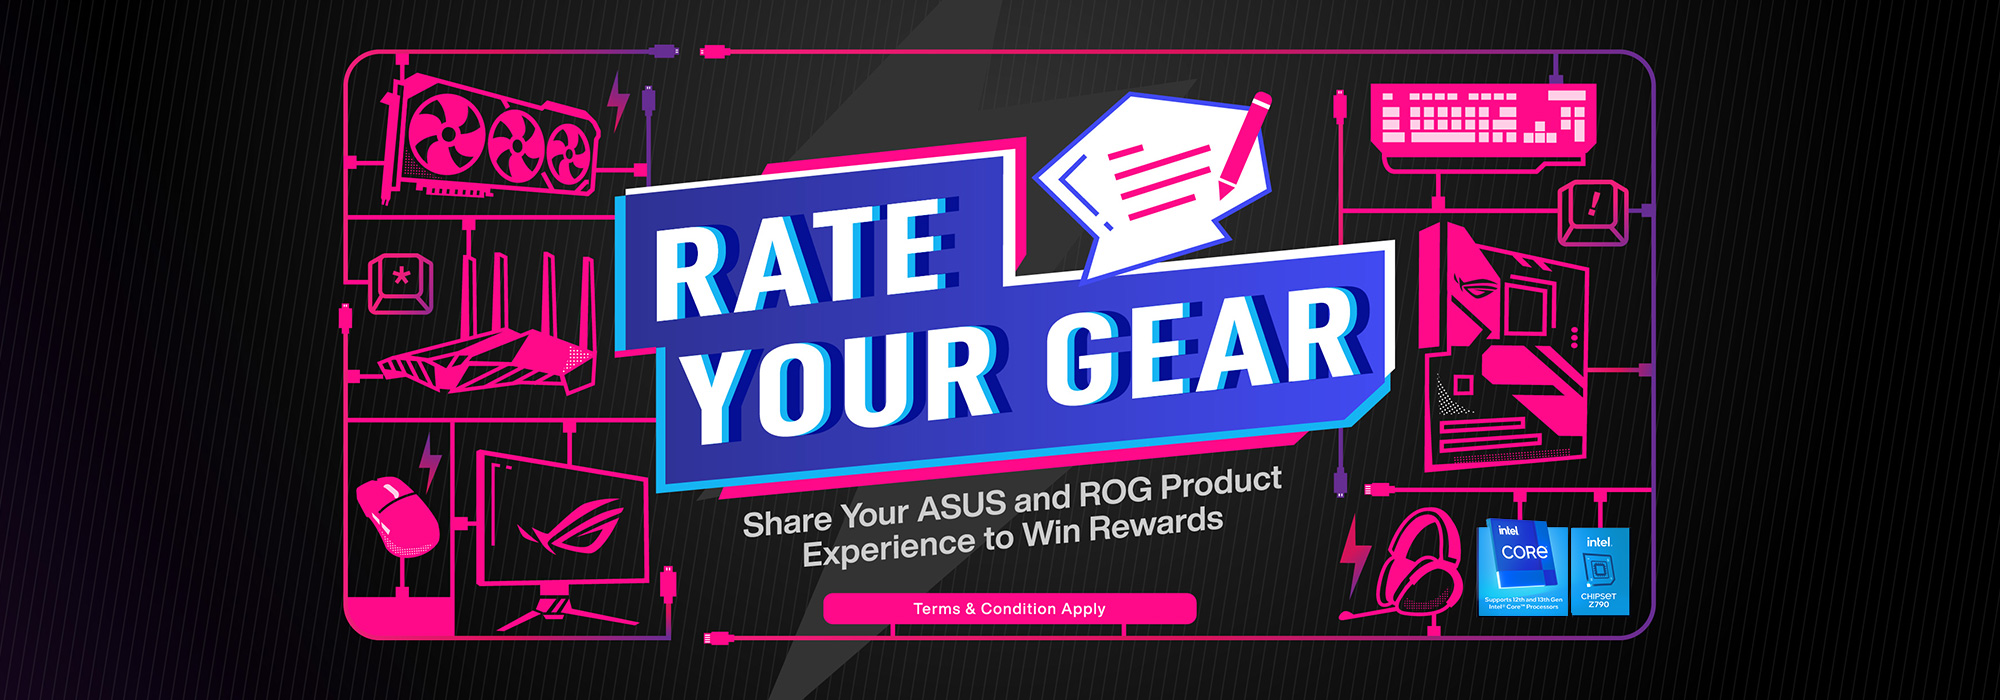 RATE YOUR GEAR - 分享您的 ASUS 和 ROG 產品體驗，贏得獎品 (需遵守條款與條件)